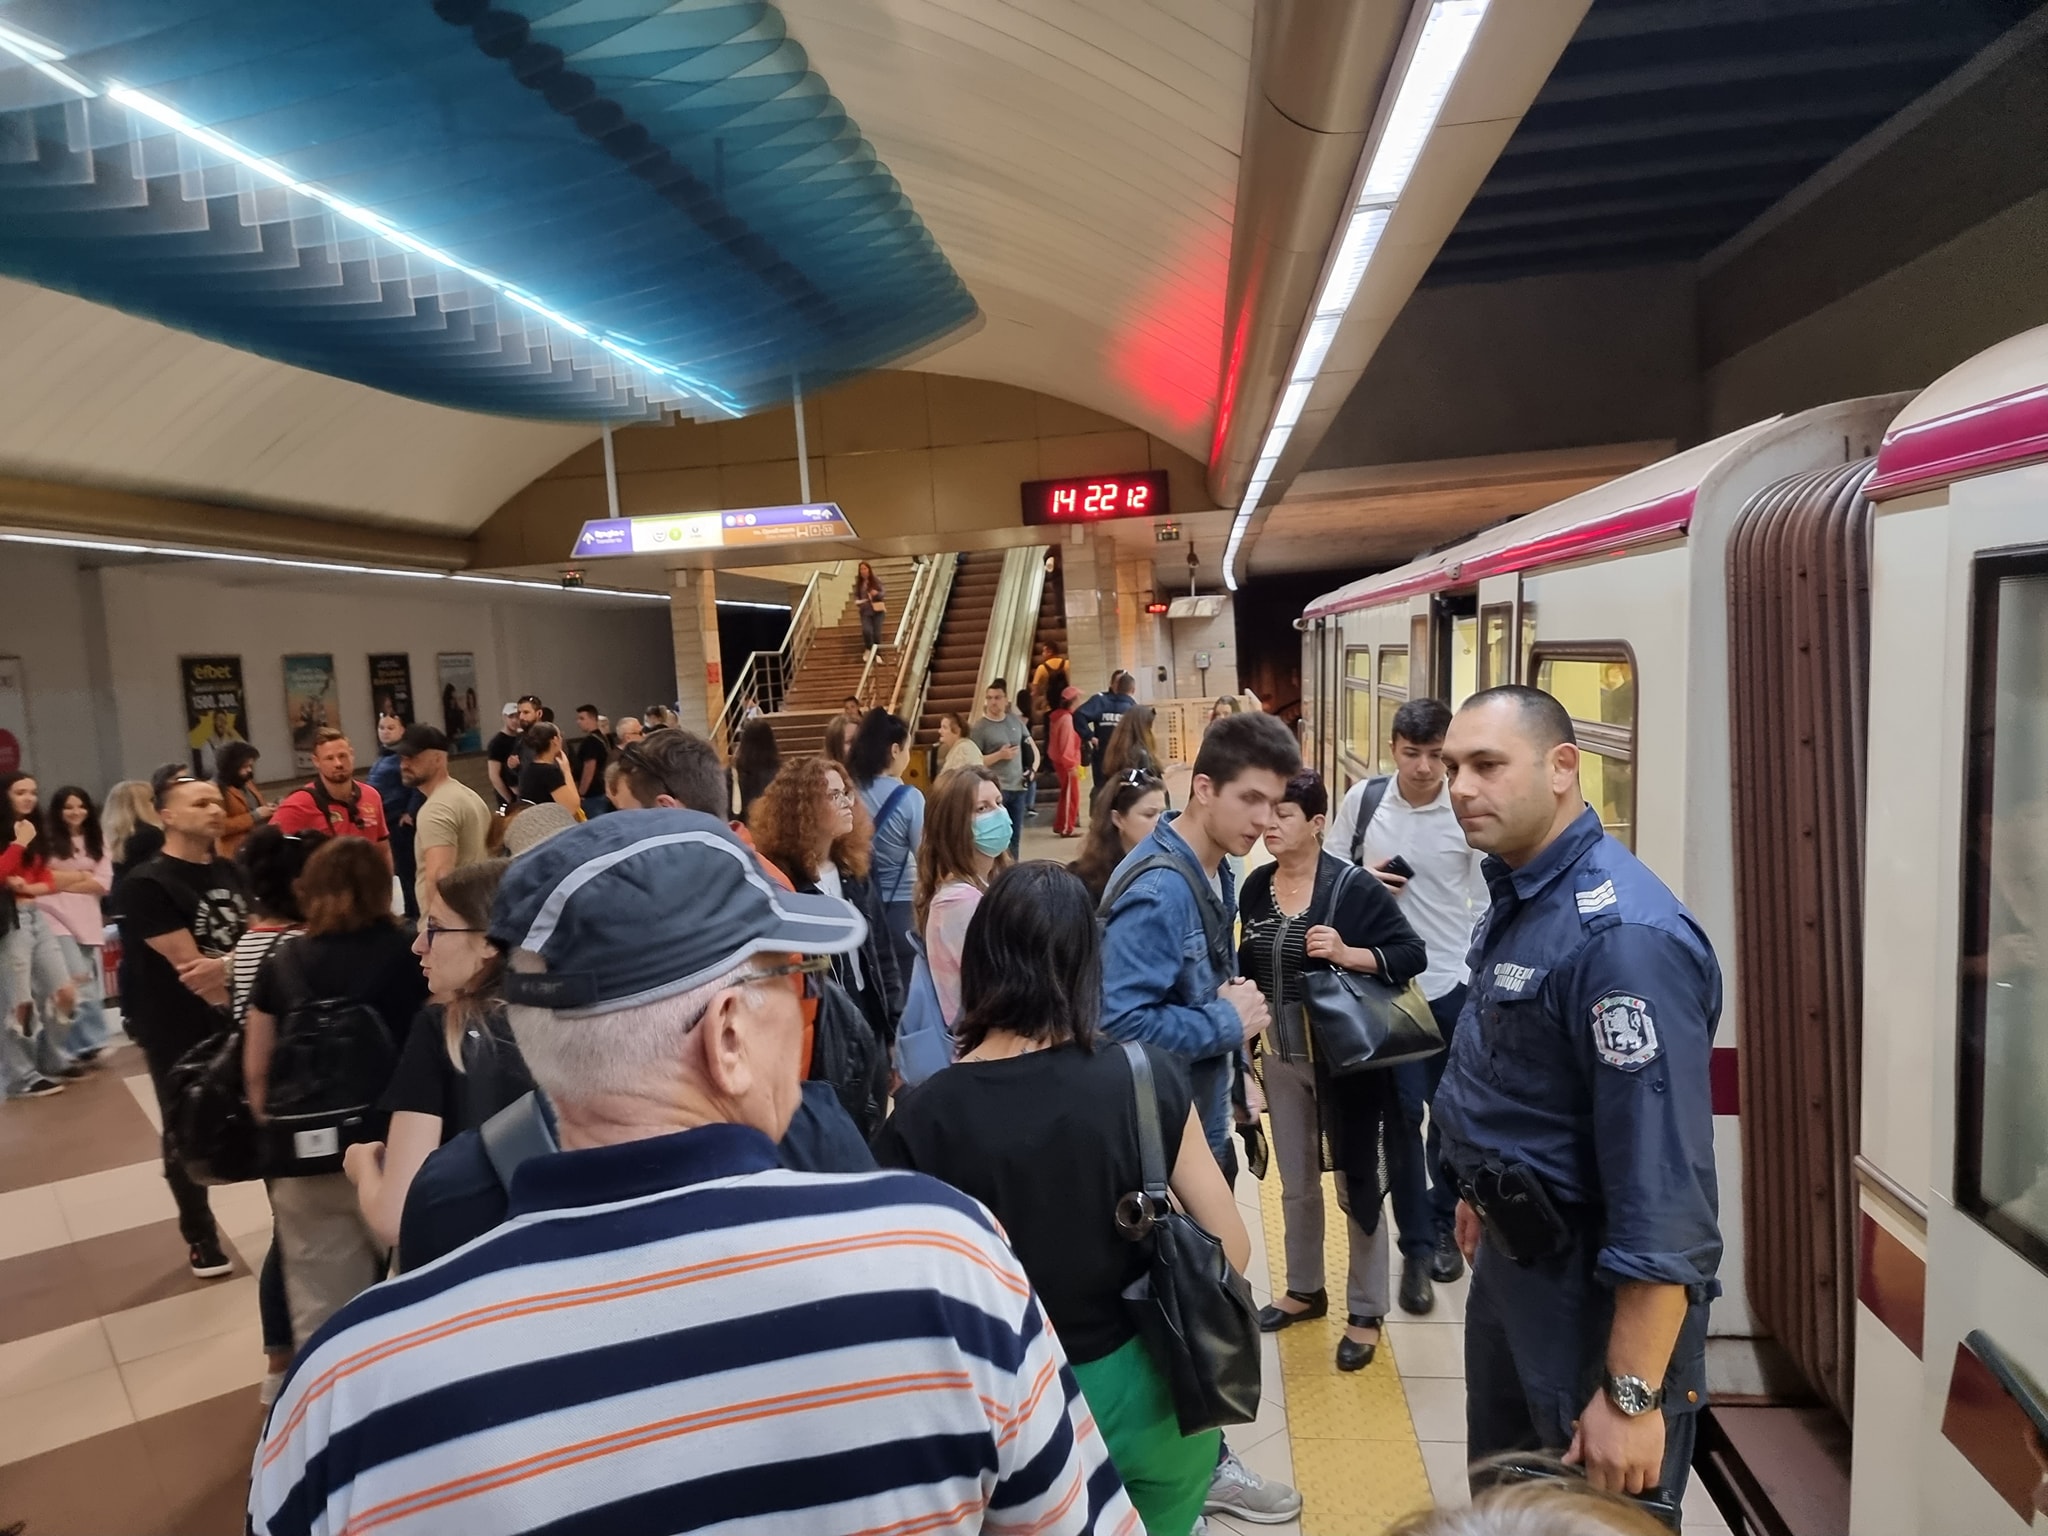 Аварирала мотриса затрудни работата на софийското метро В един от